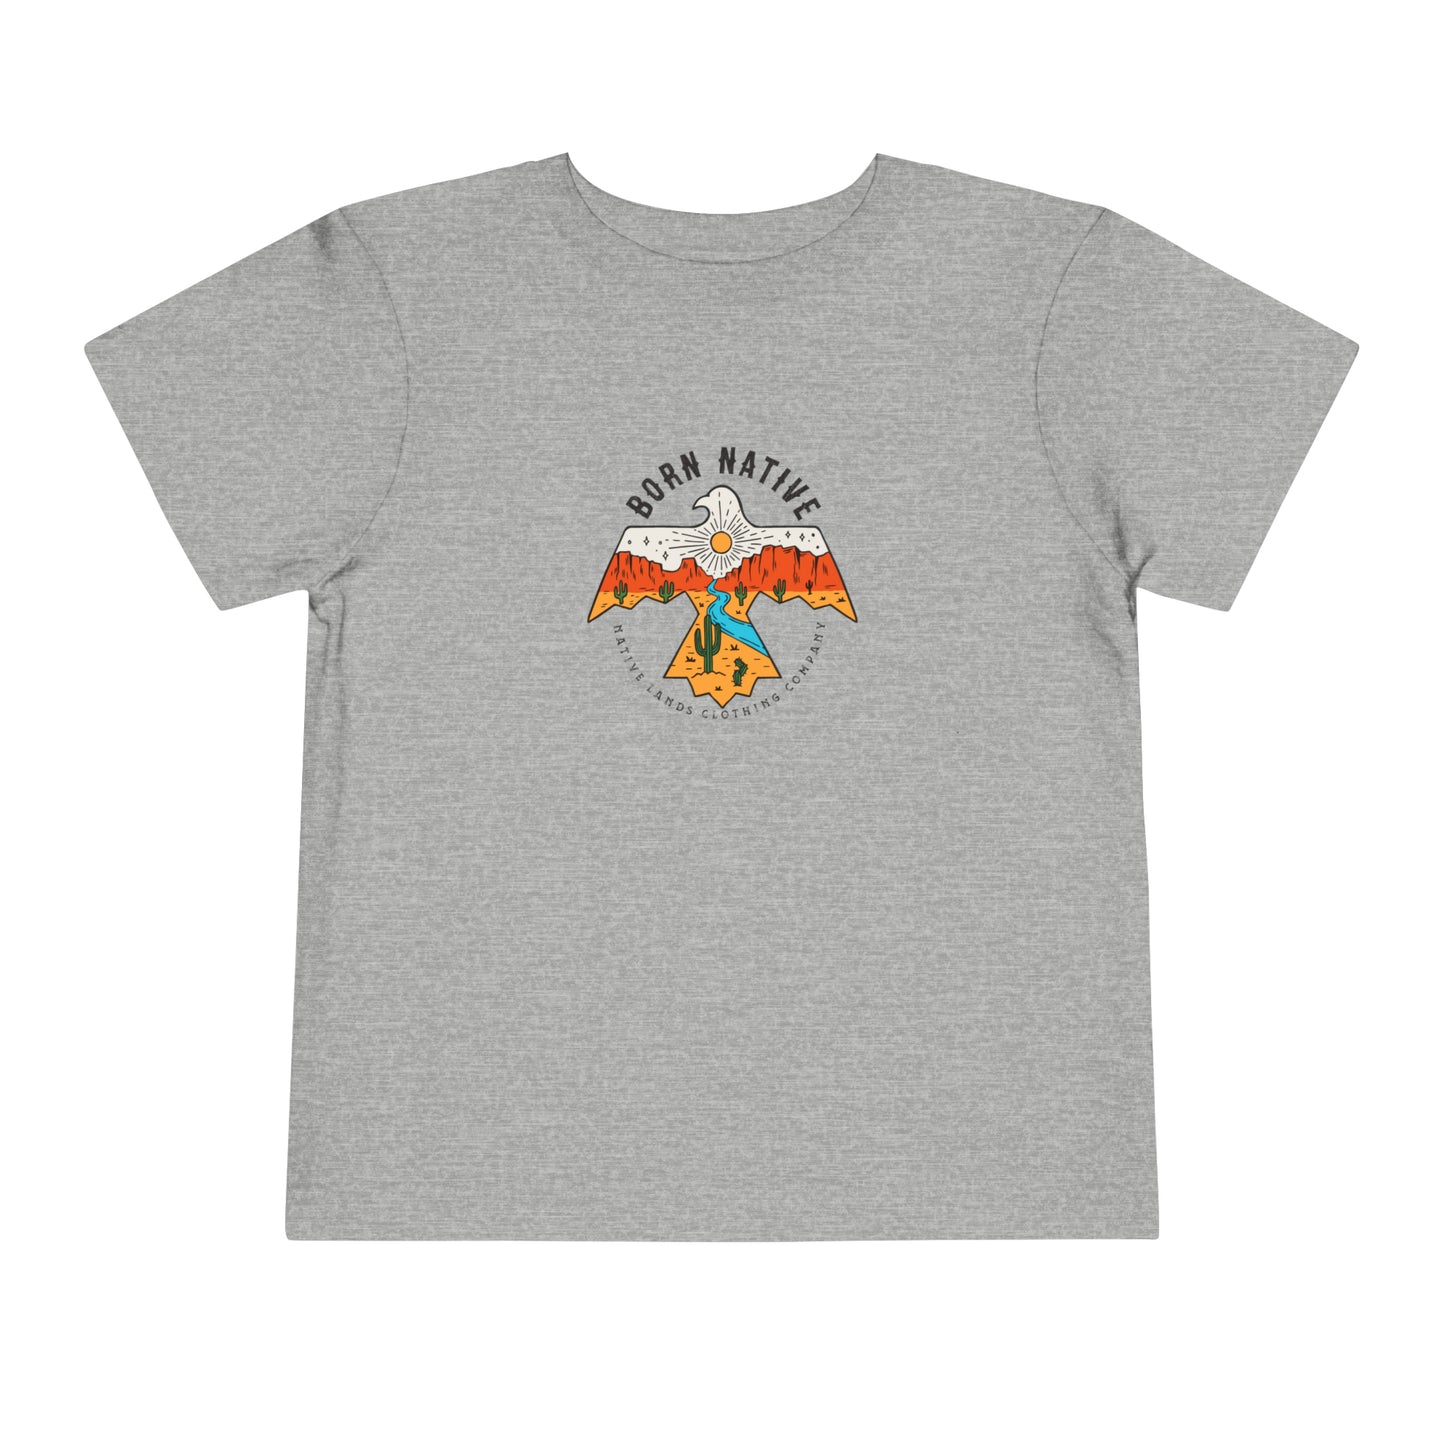 T-Shirt „Born Native“ aus Baumwolle für Kleinkinder